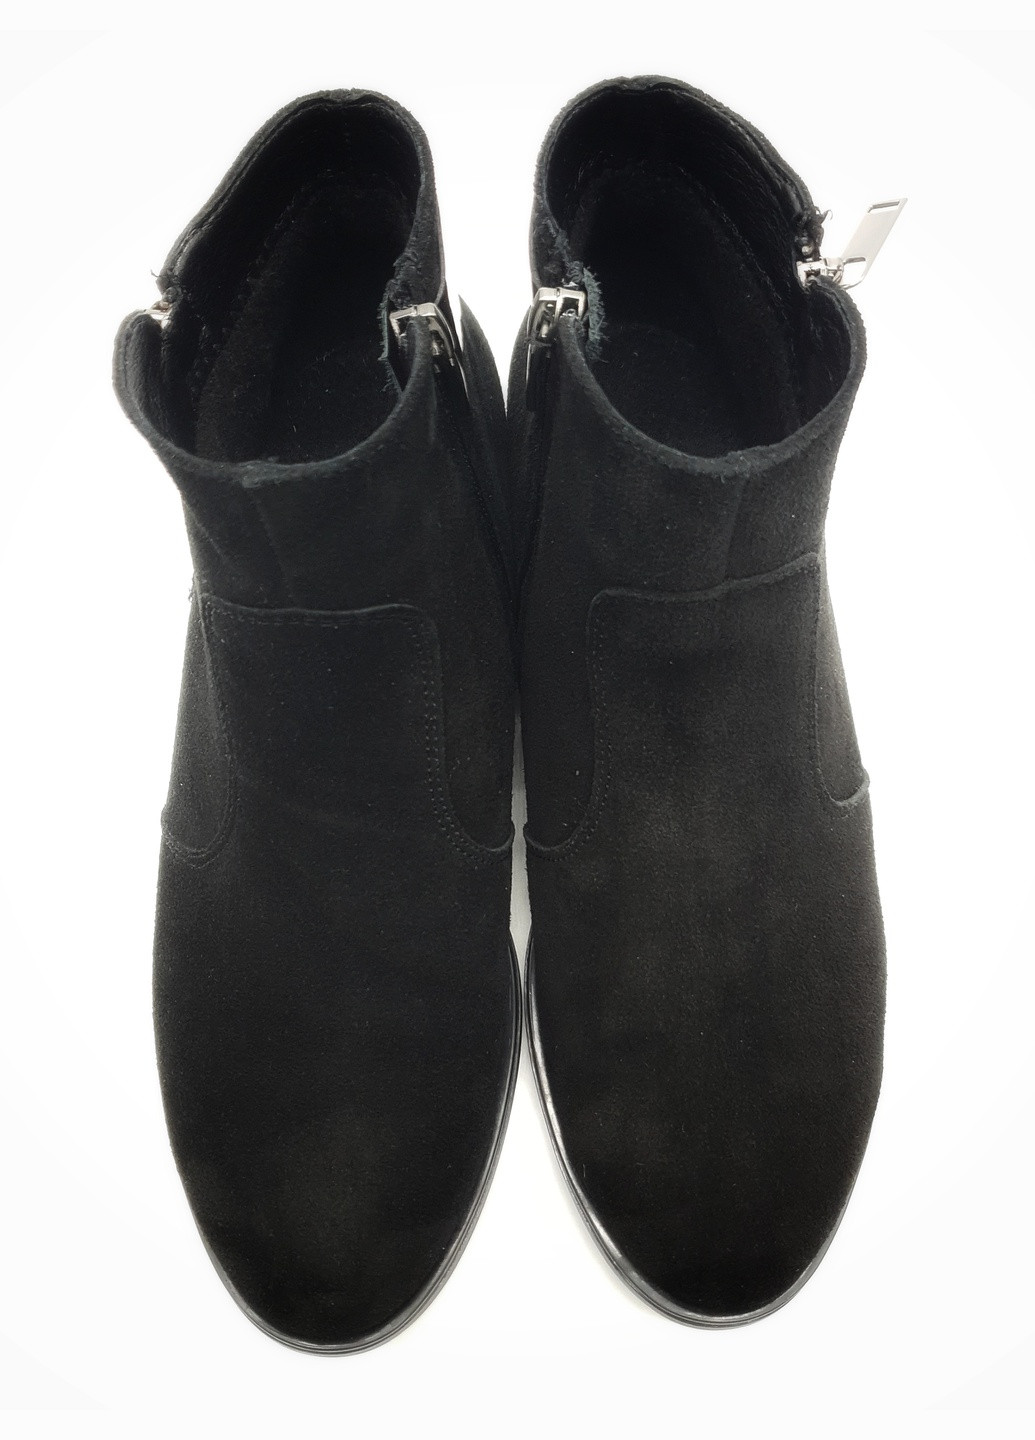 Осенние женские ботинки черные замшевые fs-17-20 24 см (р) Foot Step